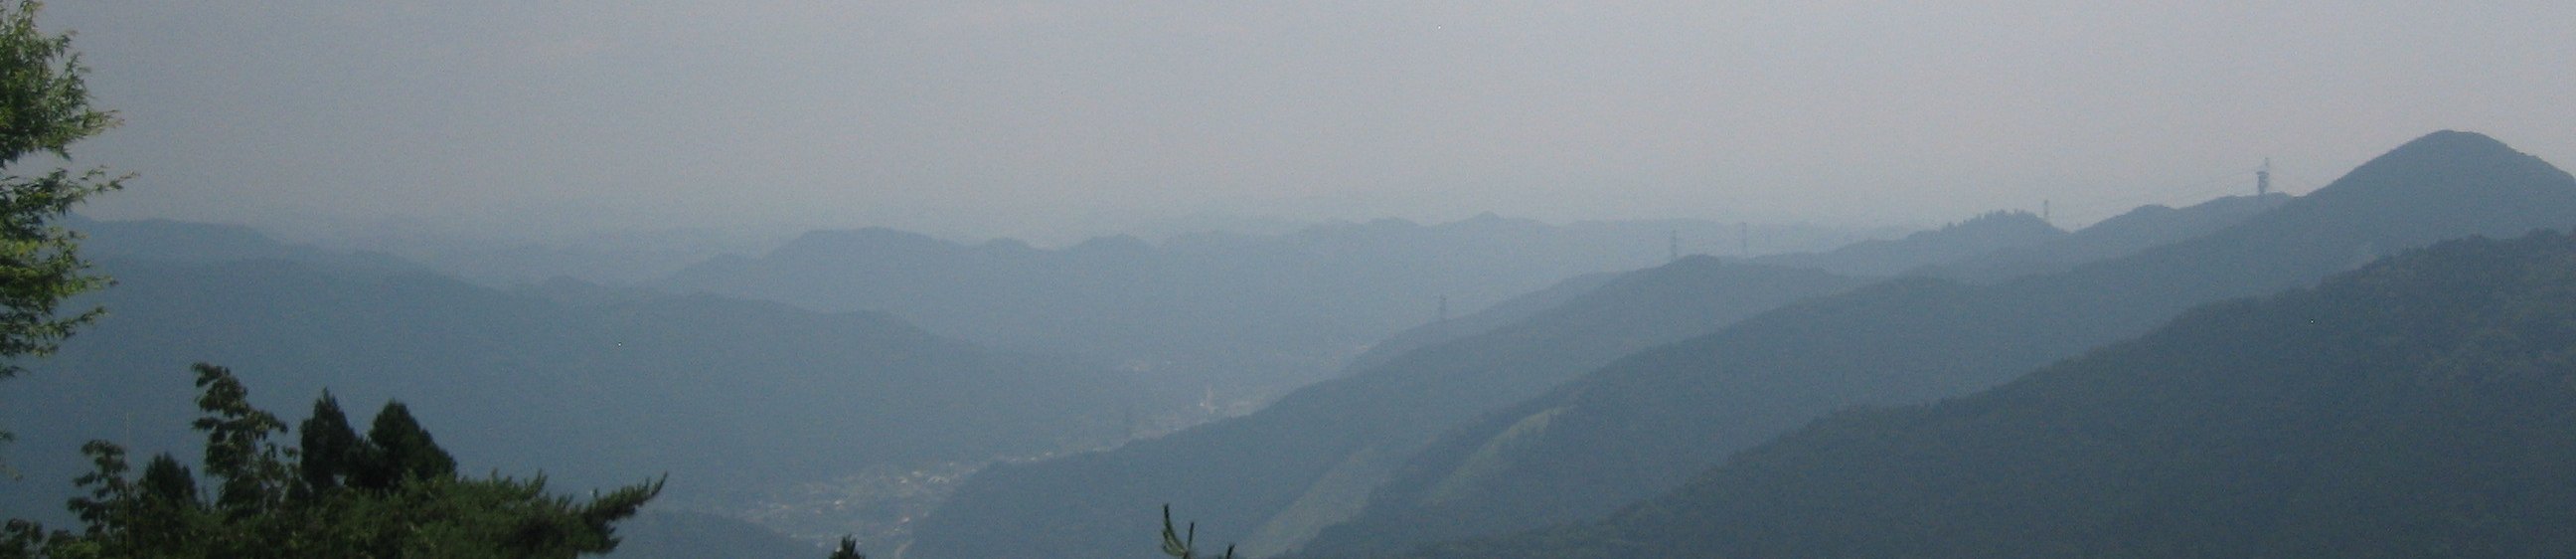 御岳山 banner image